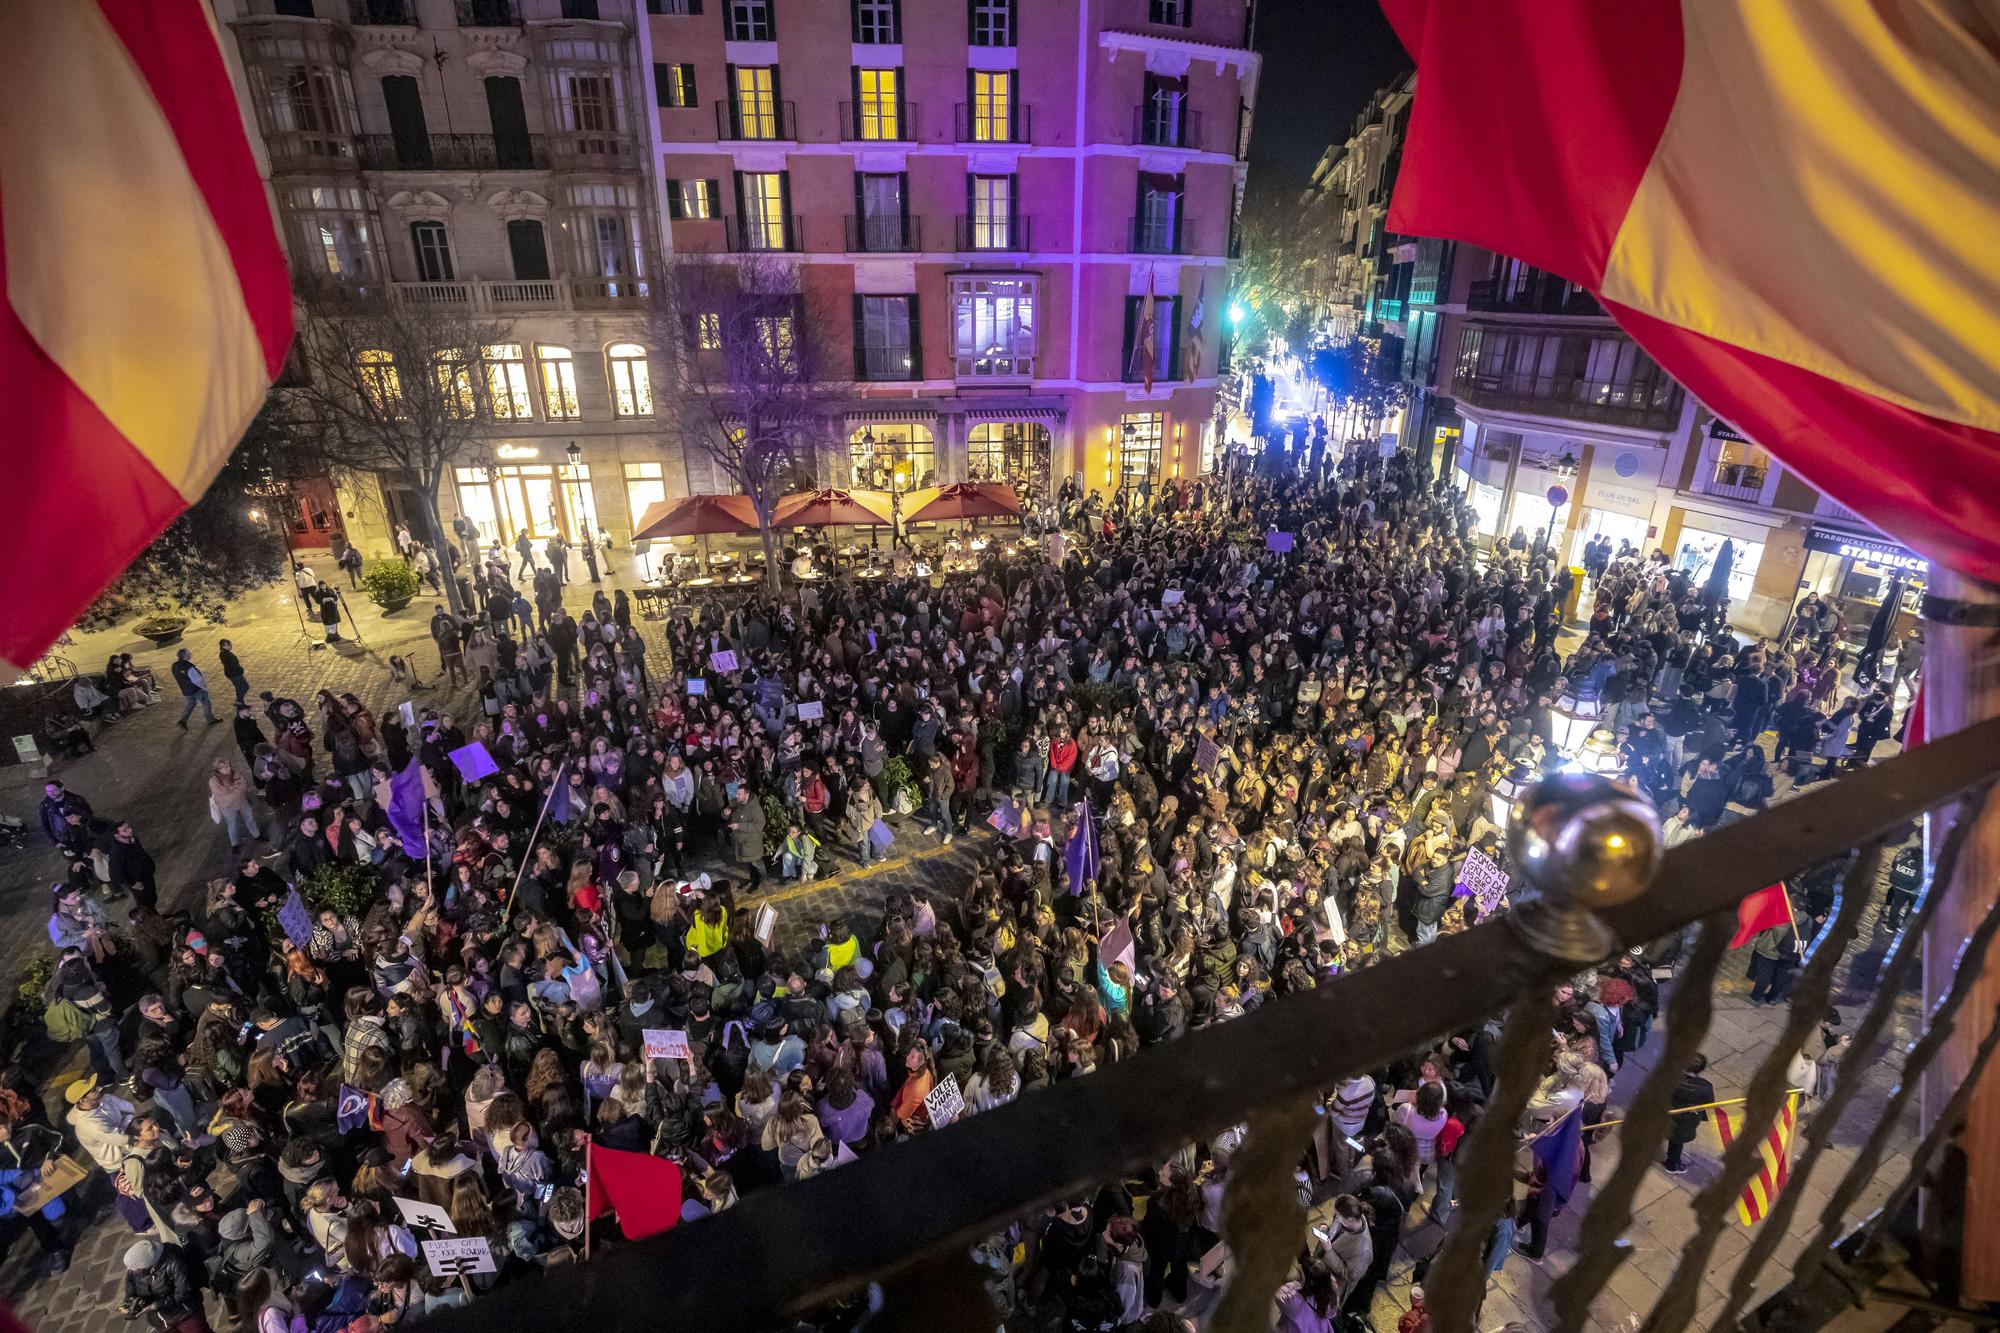 Manifestación feminista en Palma alternativa a favor de los derechos trans